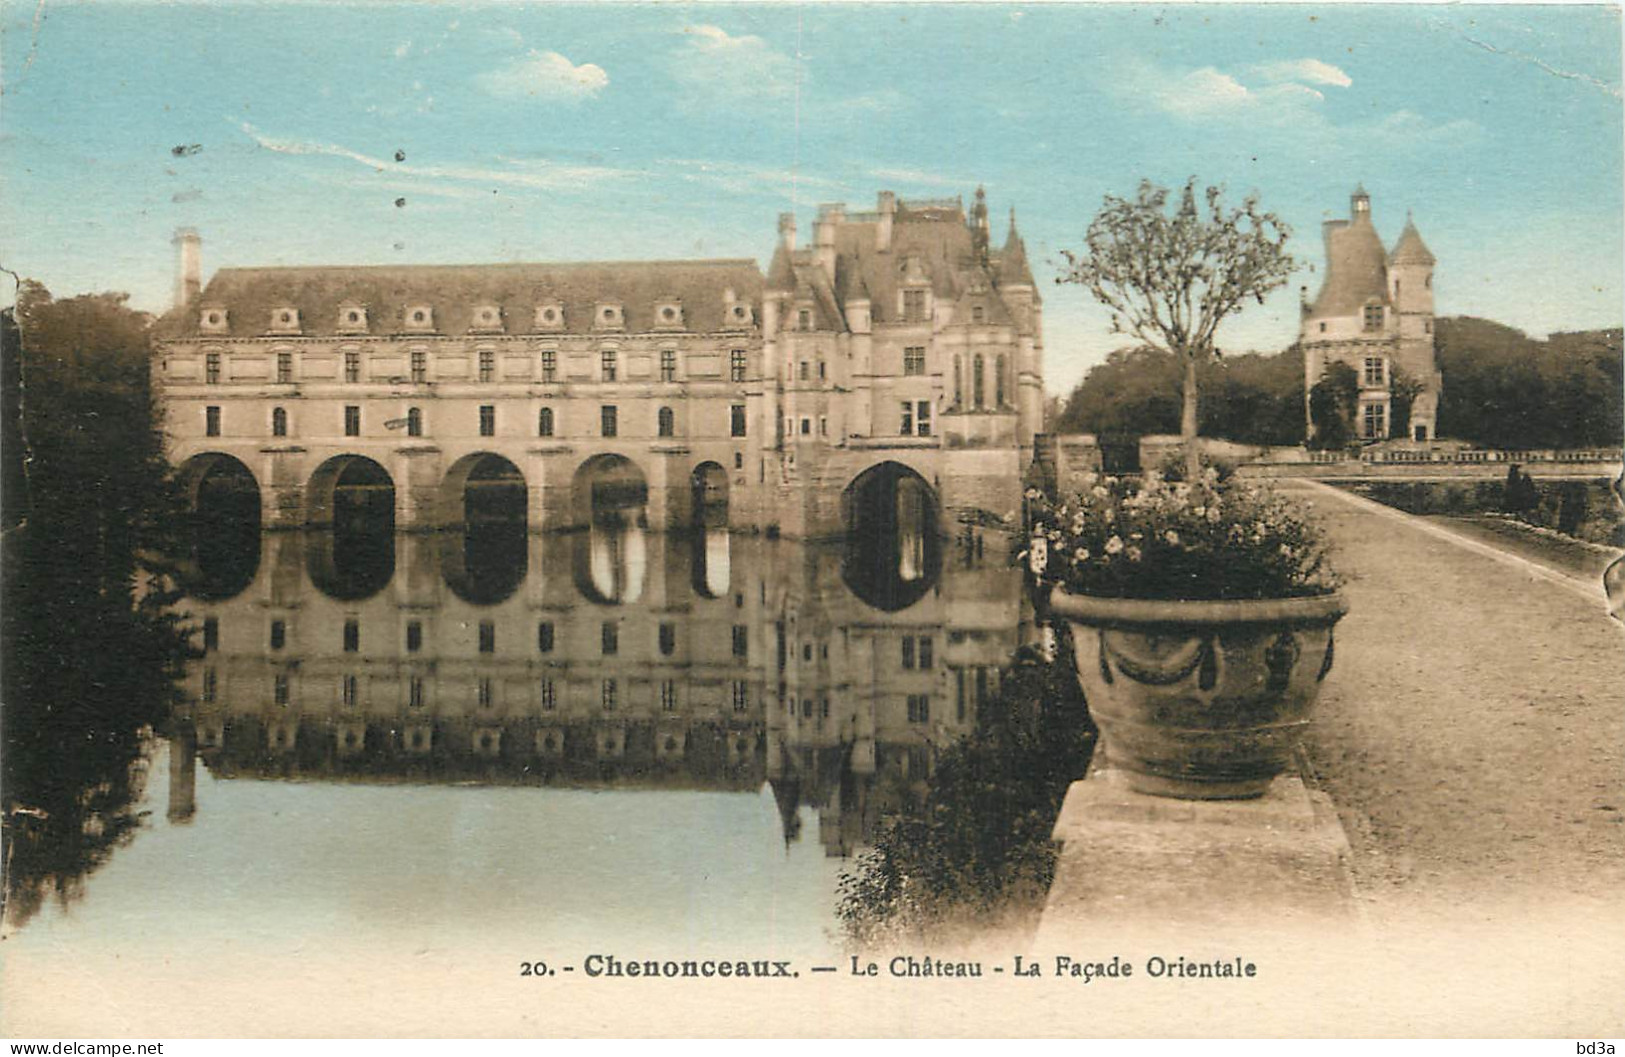  37 - CHENONCEAUX - LE CHÂTEAU - Chenonceaux